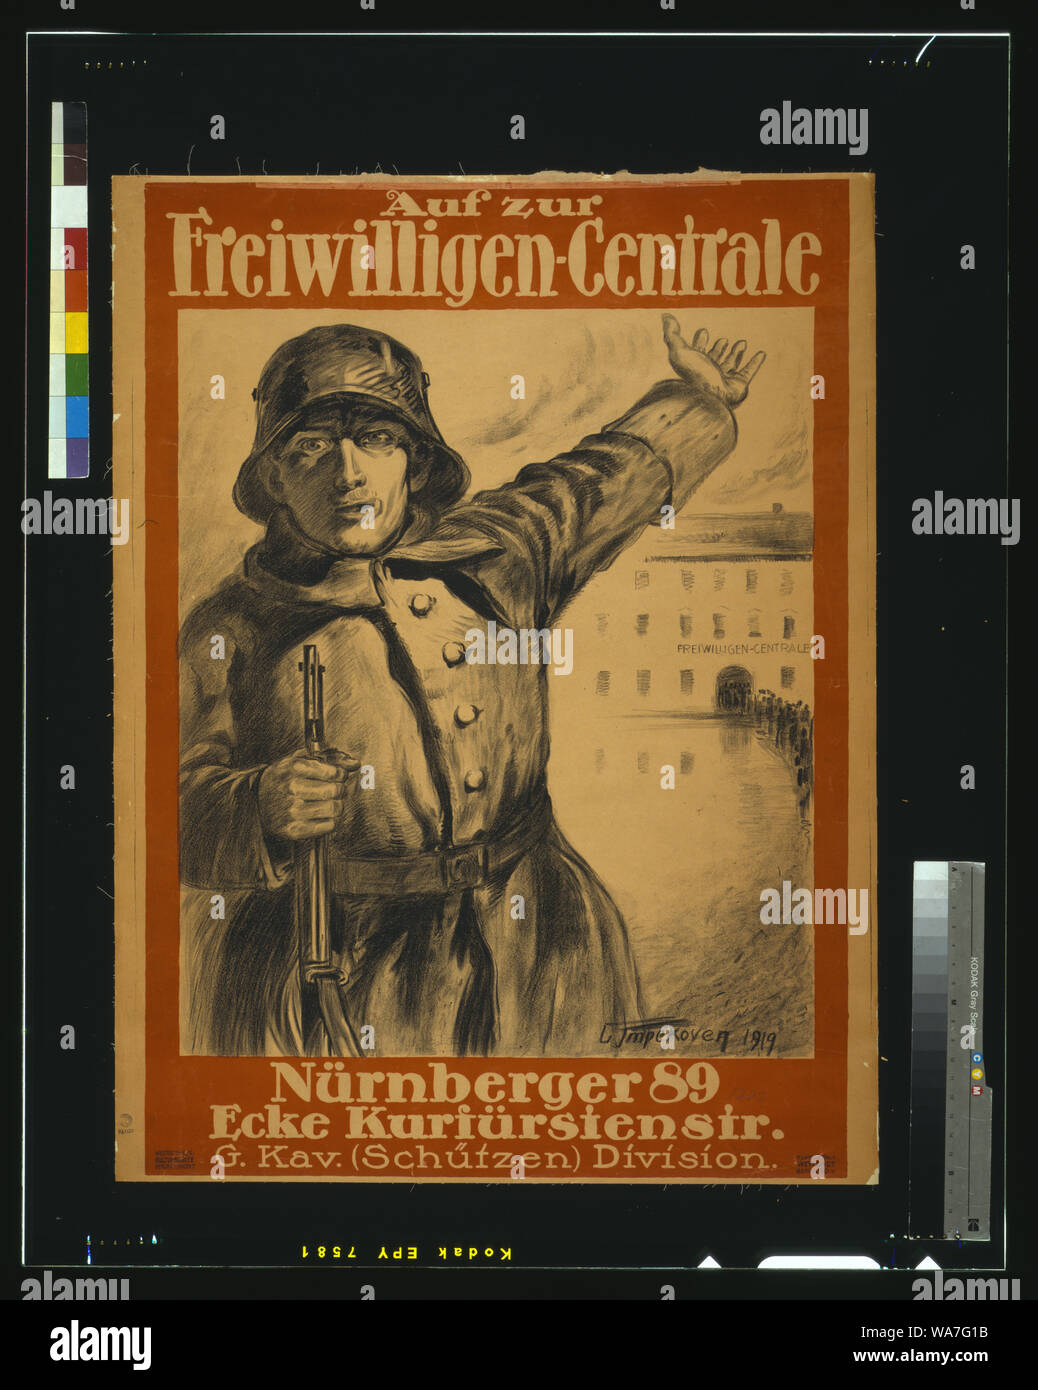 Auf zur Freiwilligen-Centrale, Nürnberger 89, Ecke Kurfürstenstr., G. Kav. (Schützen) Division / L. Impekoven, 1919. Stock Photo